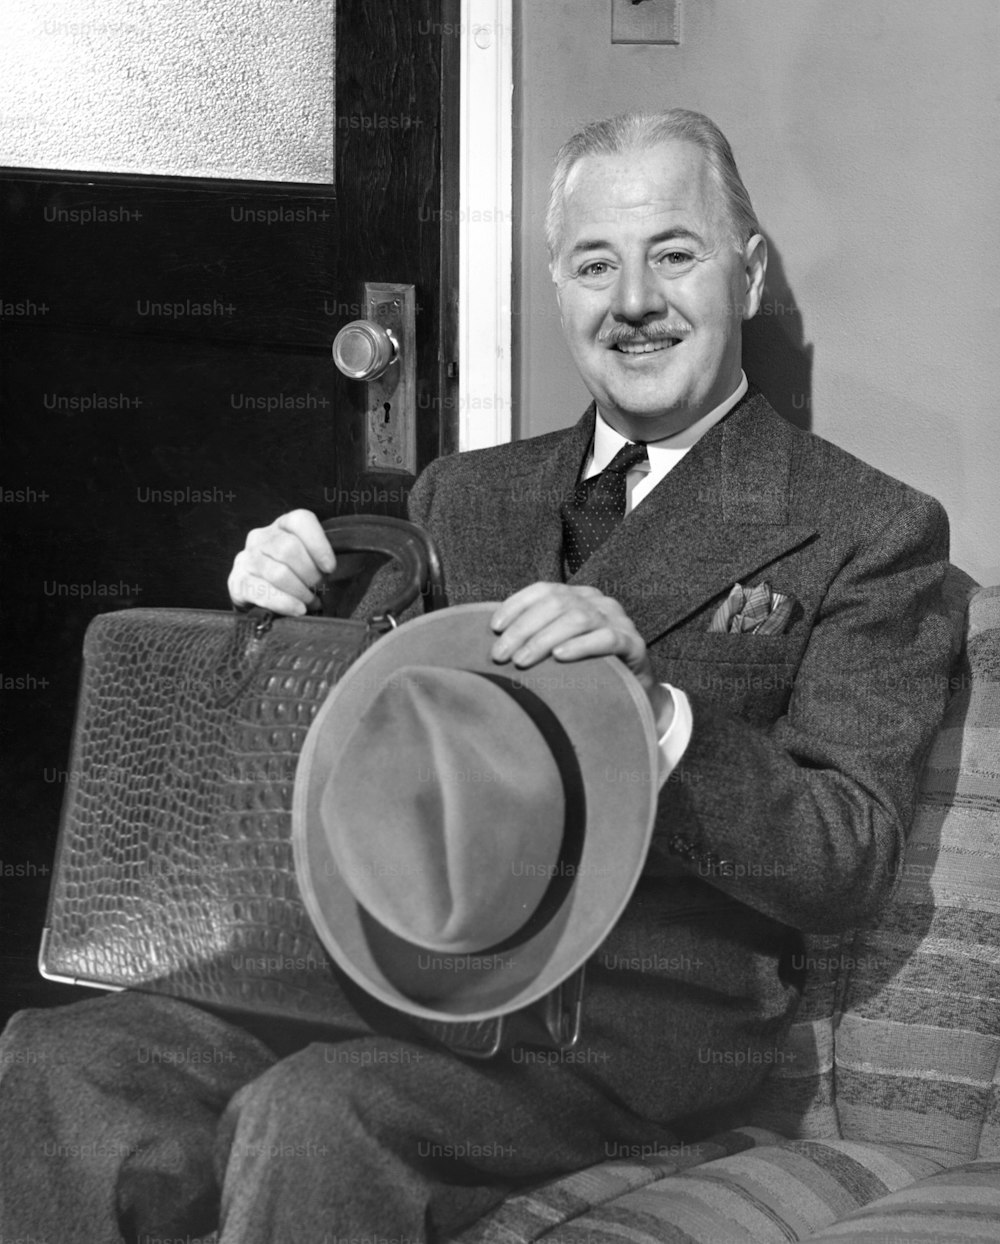 アメリカ合衆国 - 1950年代頃:オフィスの外で帽子をかぶったビジネスマンが待っている。